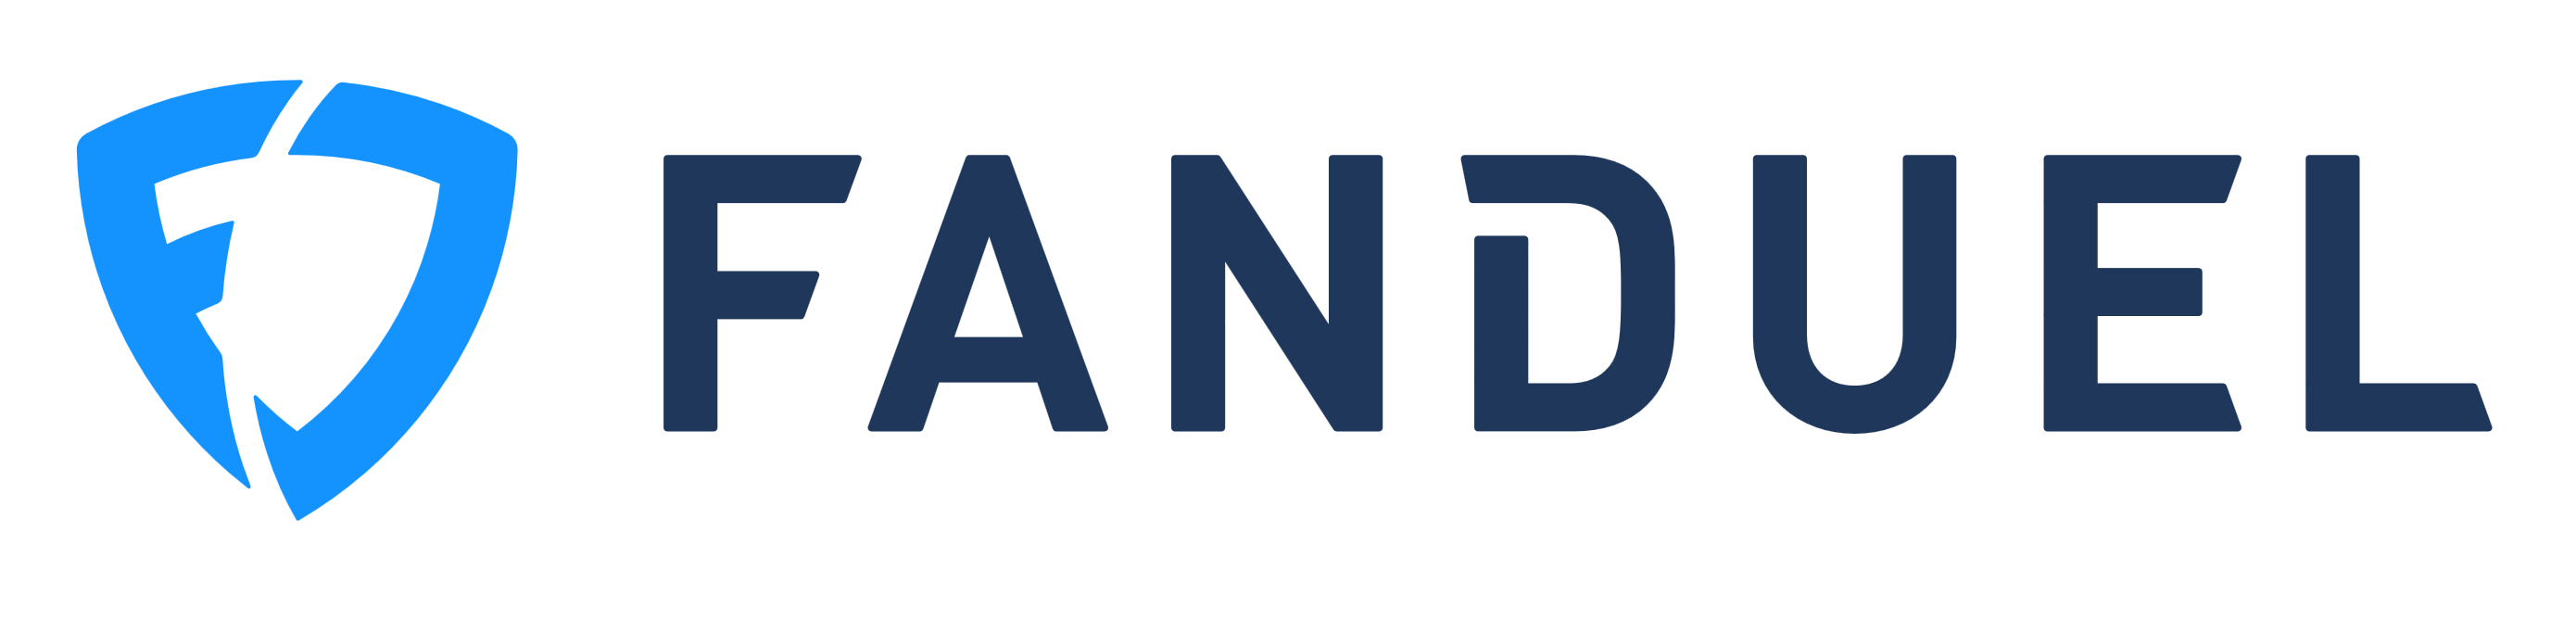 Fanduel logo, logotype